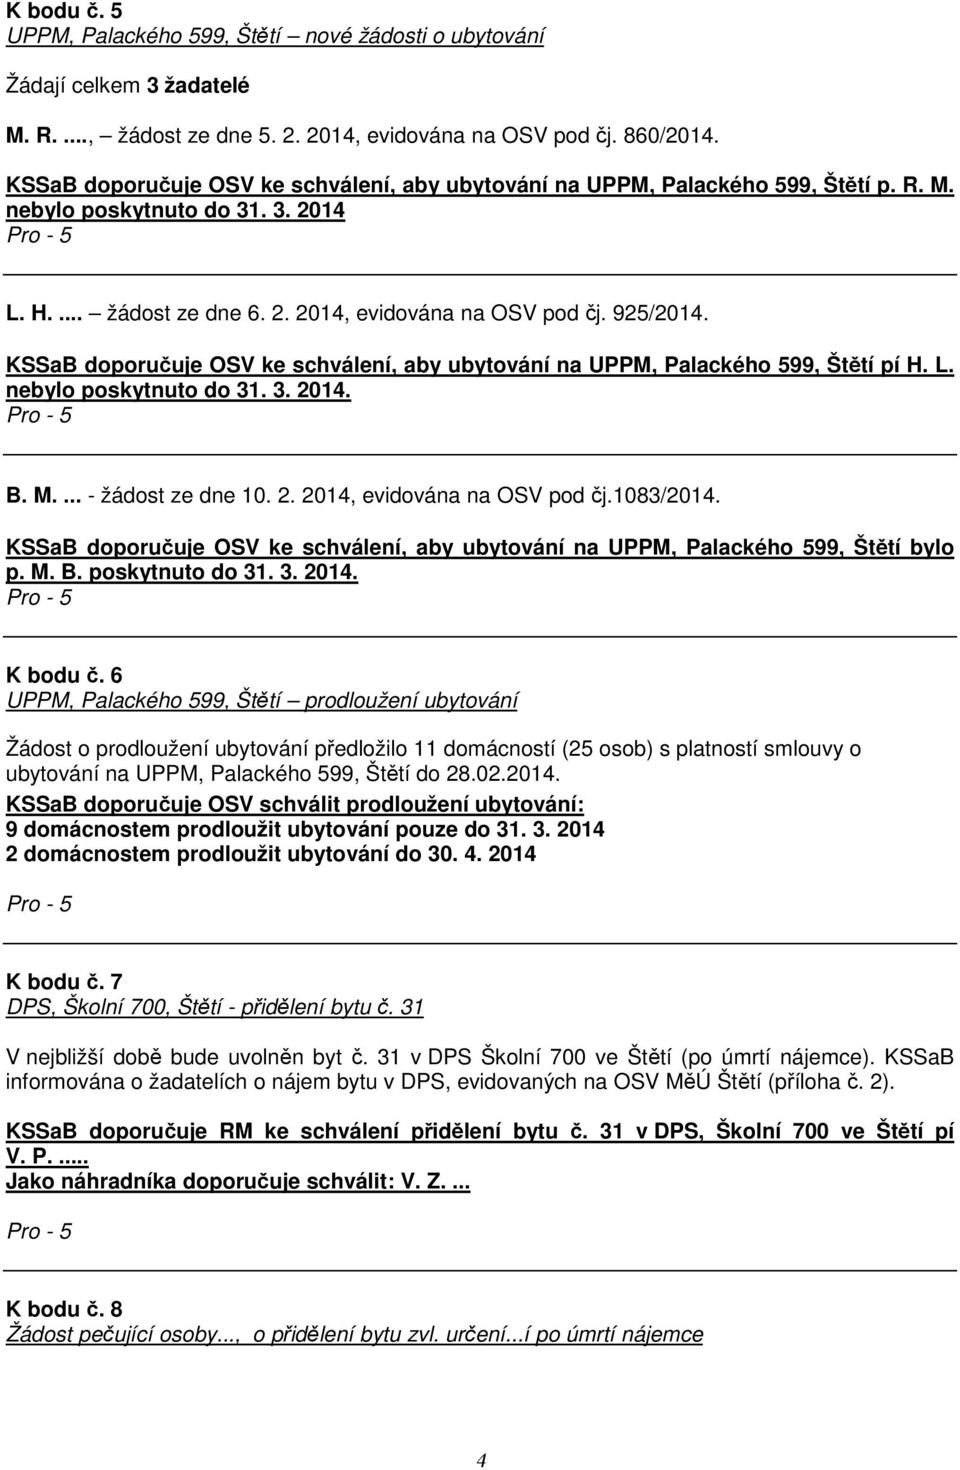 KSSaB doporučuje OSV ke schválení, aby ubytování na UPPM, Palackého 599, Štětí pí H. L. nebylo poskytnuto do 31. 3. 2014. B. M.... - žádost ze dne 10. 2. 2014, evidována na OSV pod čj.1083/2014.